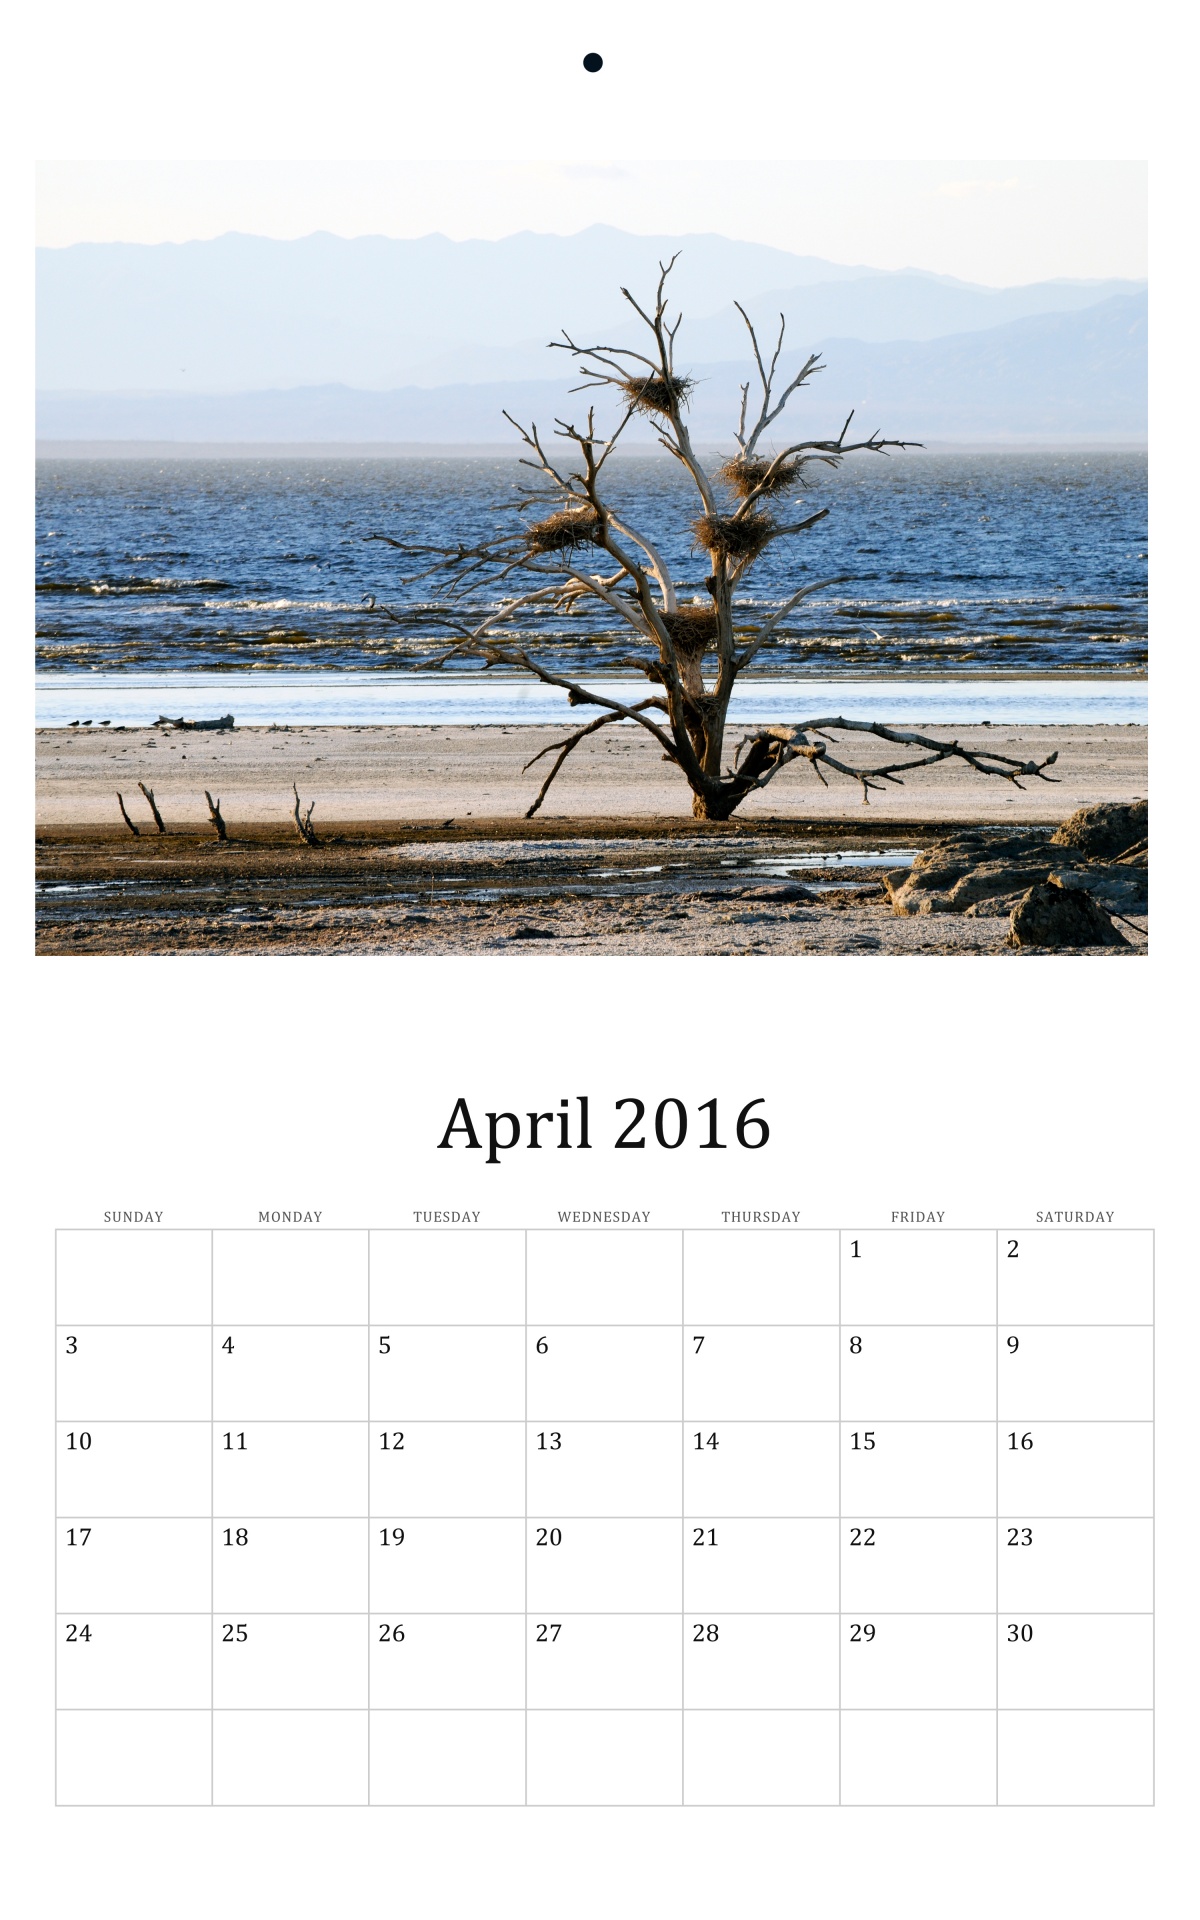 April 2016 Wall Calendar